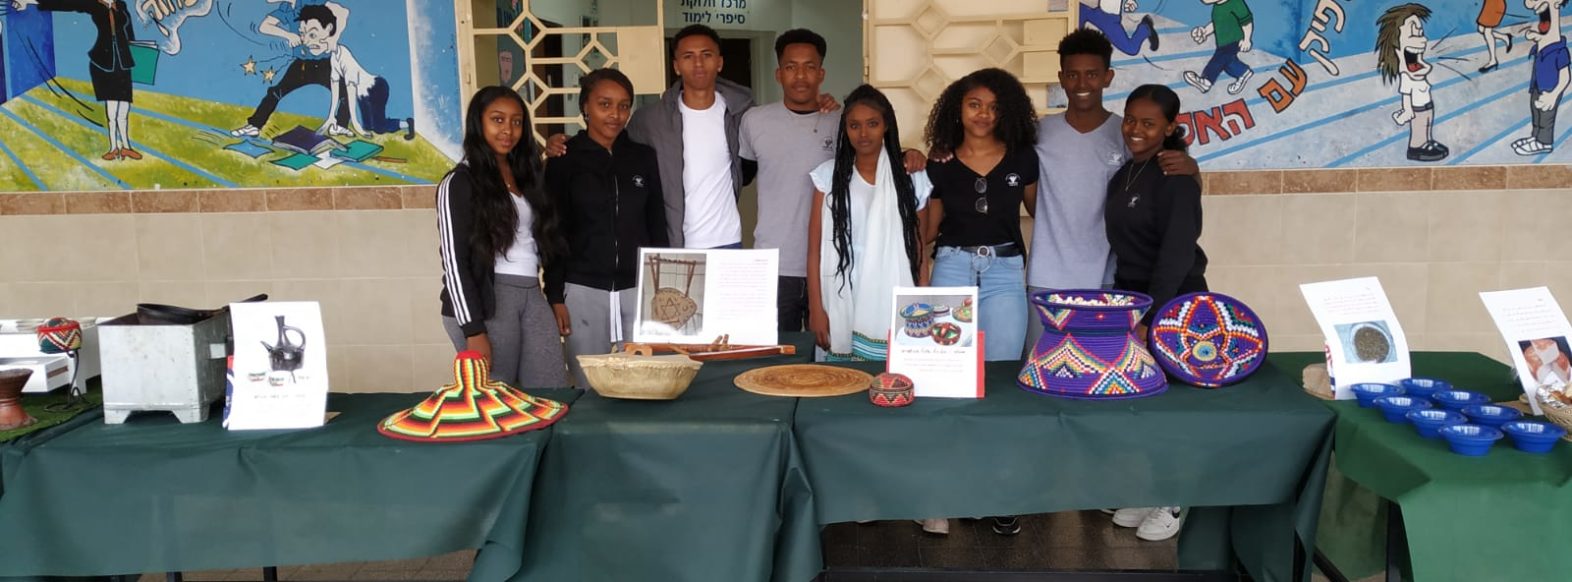 תלמידי בתי הספר בקרית אתא  ציינו את חג הסיגד של העדה האתיופית